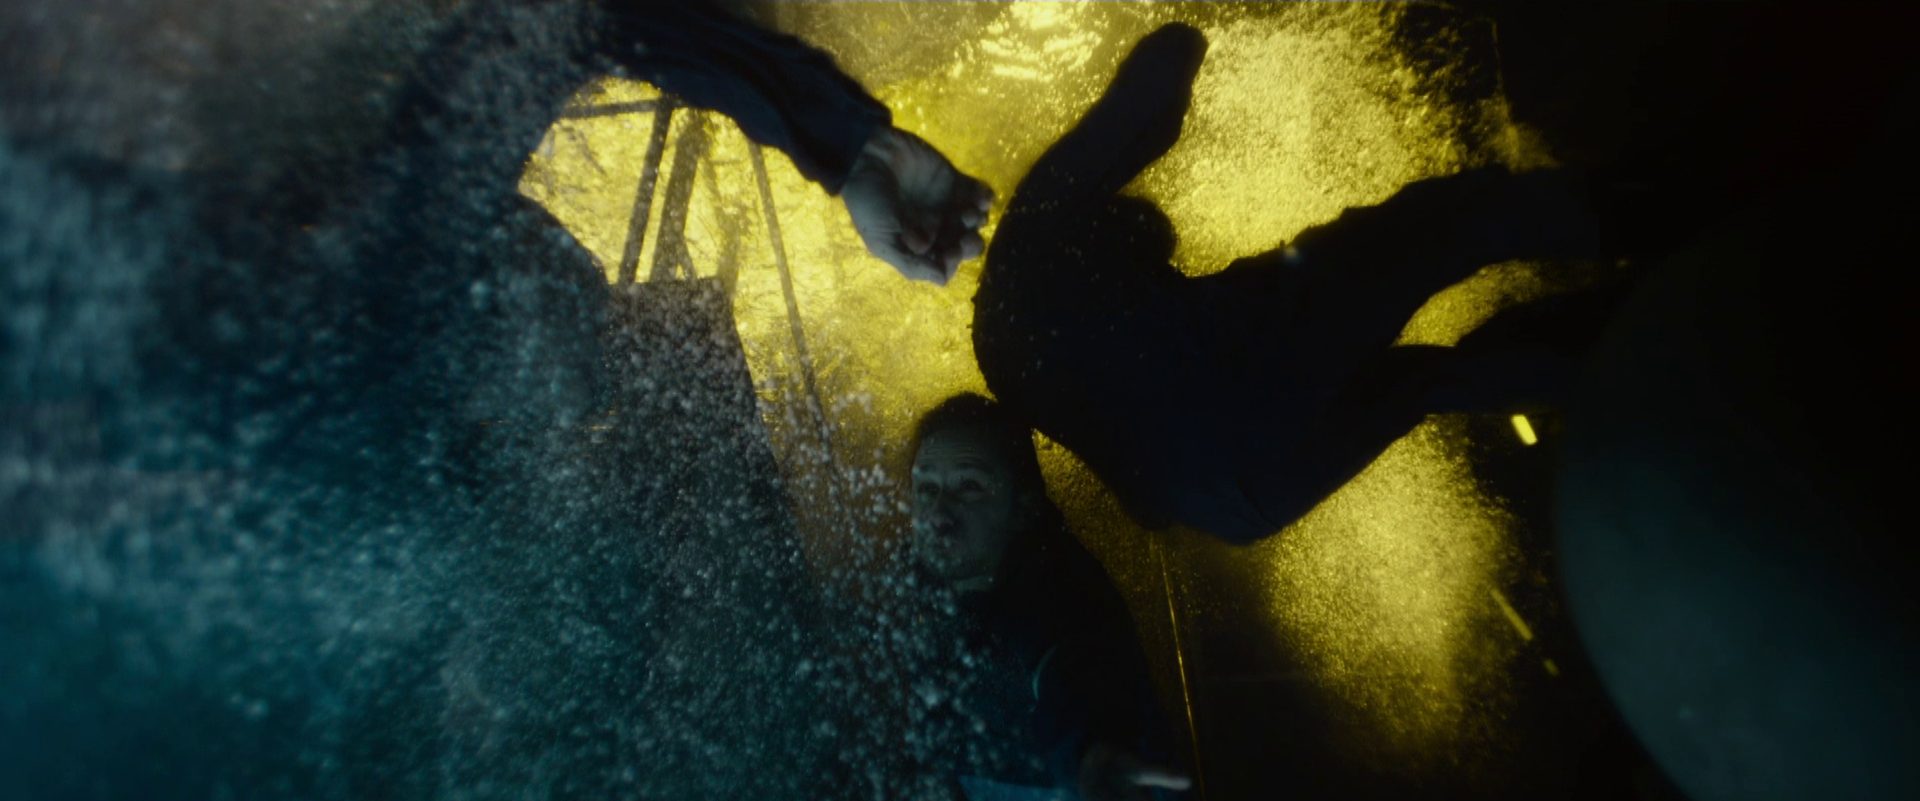 Intensive Szene, die unter Wasser getauchte Seemänner an Bord der „Kursk“ zeigt; an der Wasseroberfläche zeichnet sich eine Explosion ab.